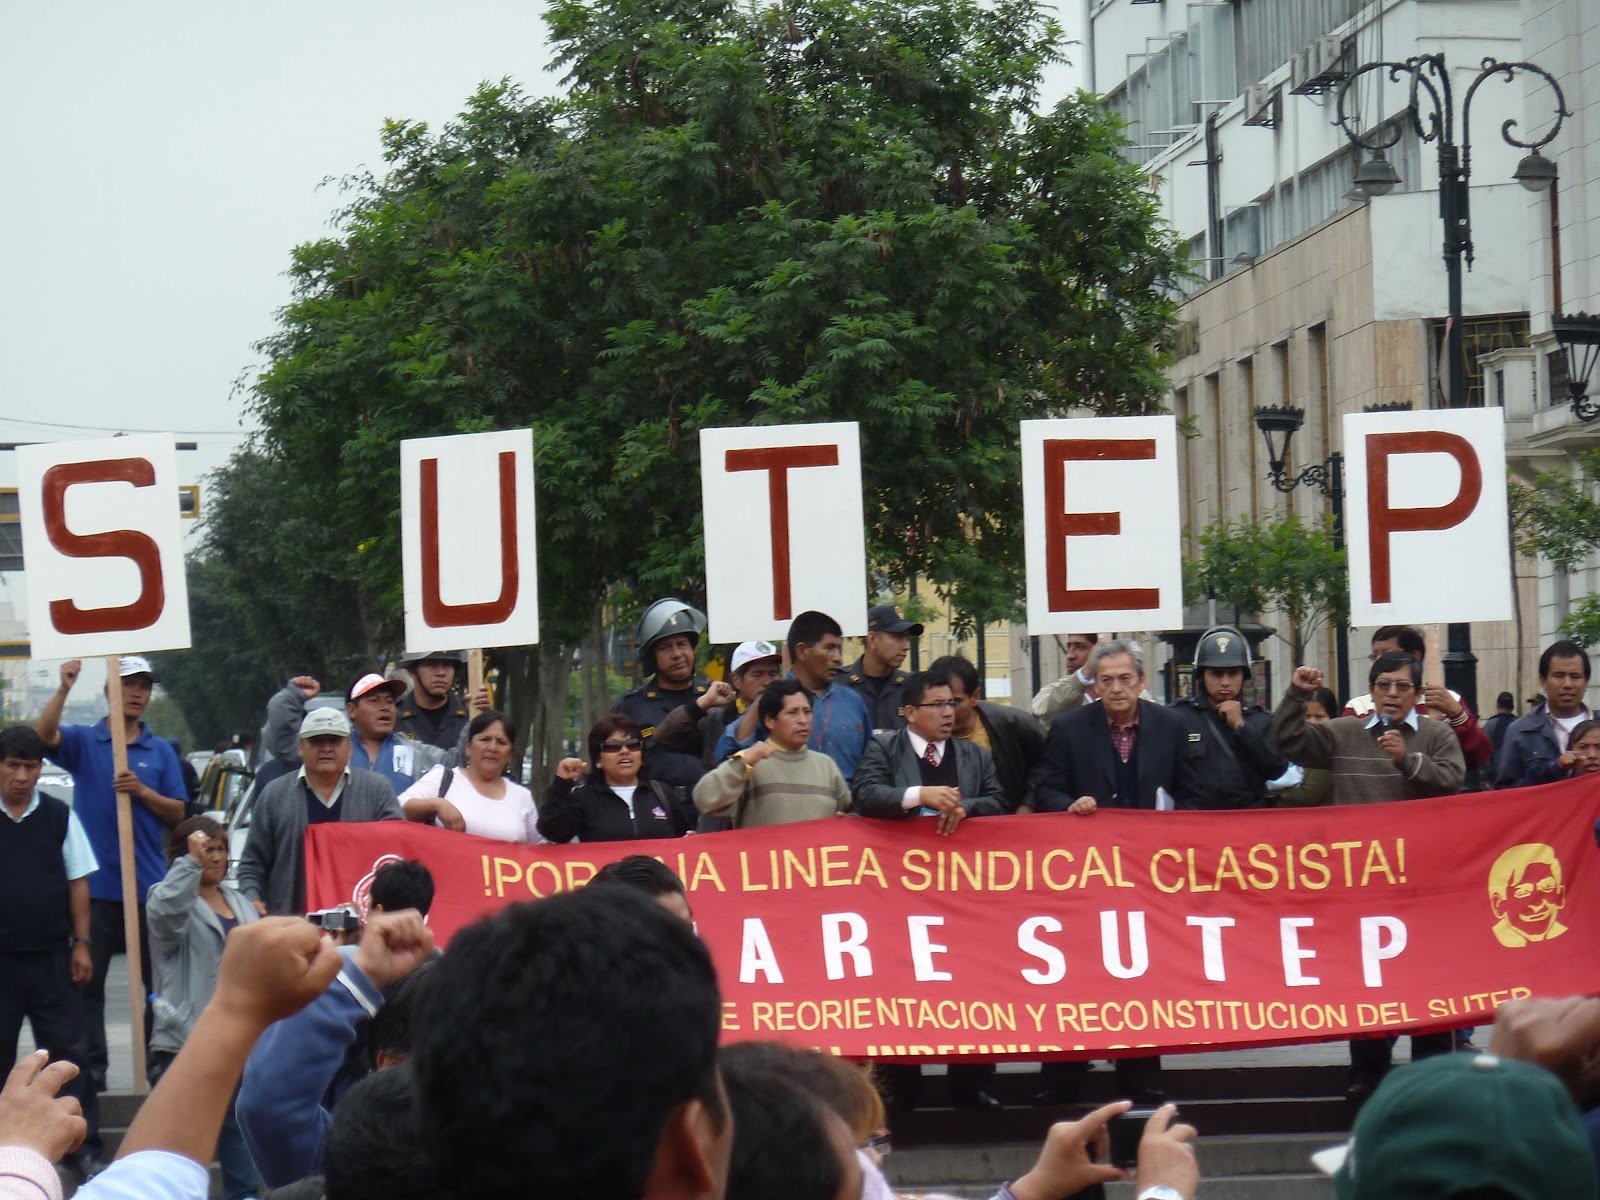 Sutep en marcha por calles de Lima